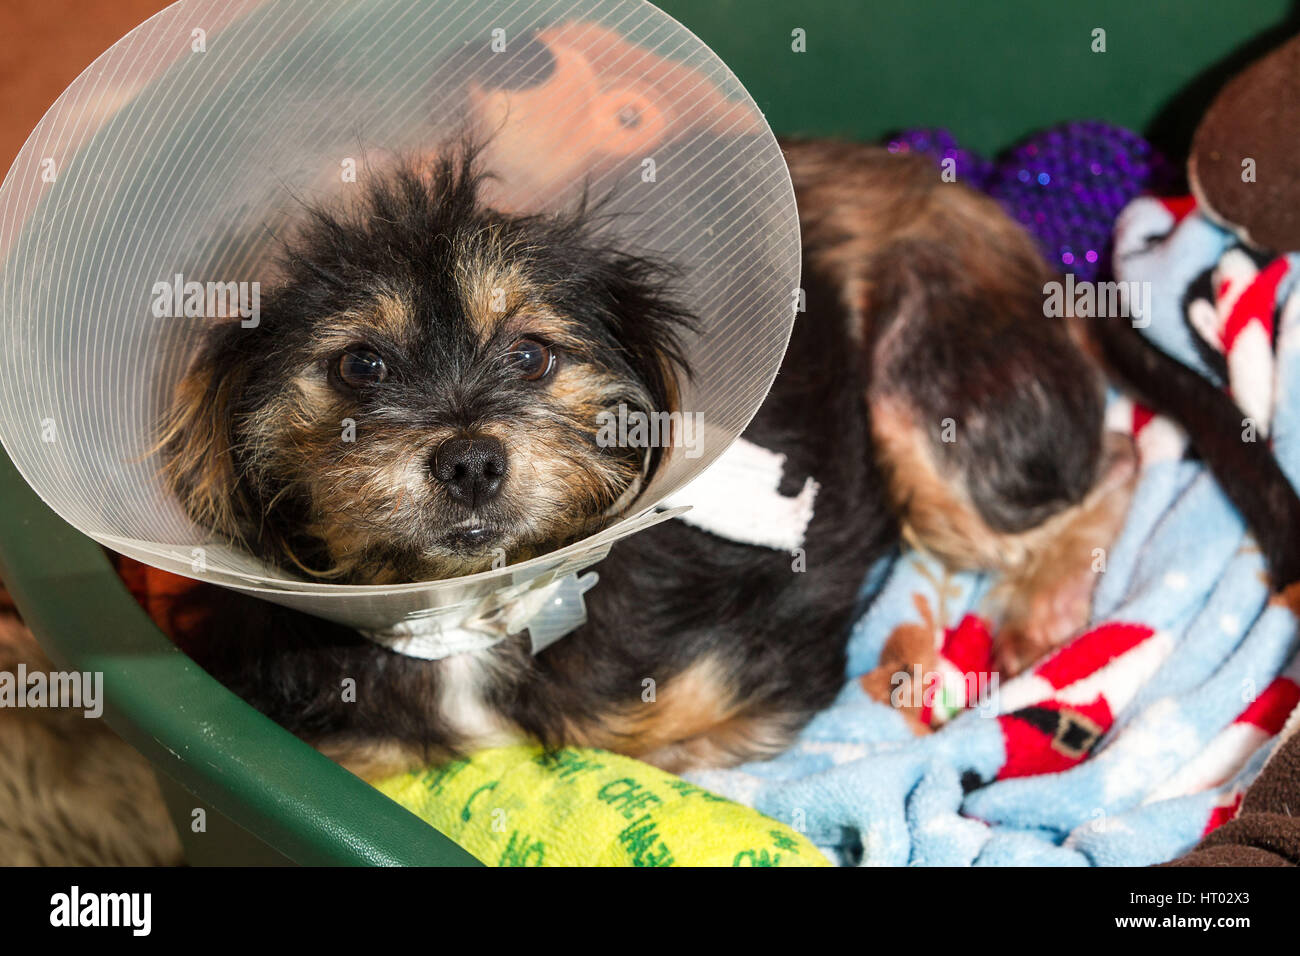 mongrel dog wearing elizabethan collar Stock Photo